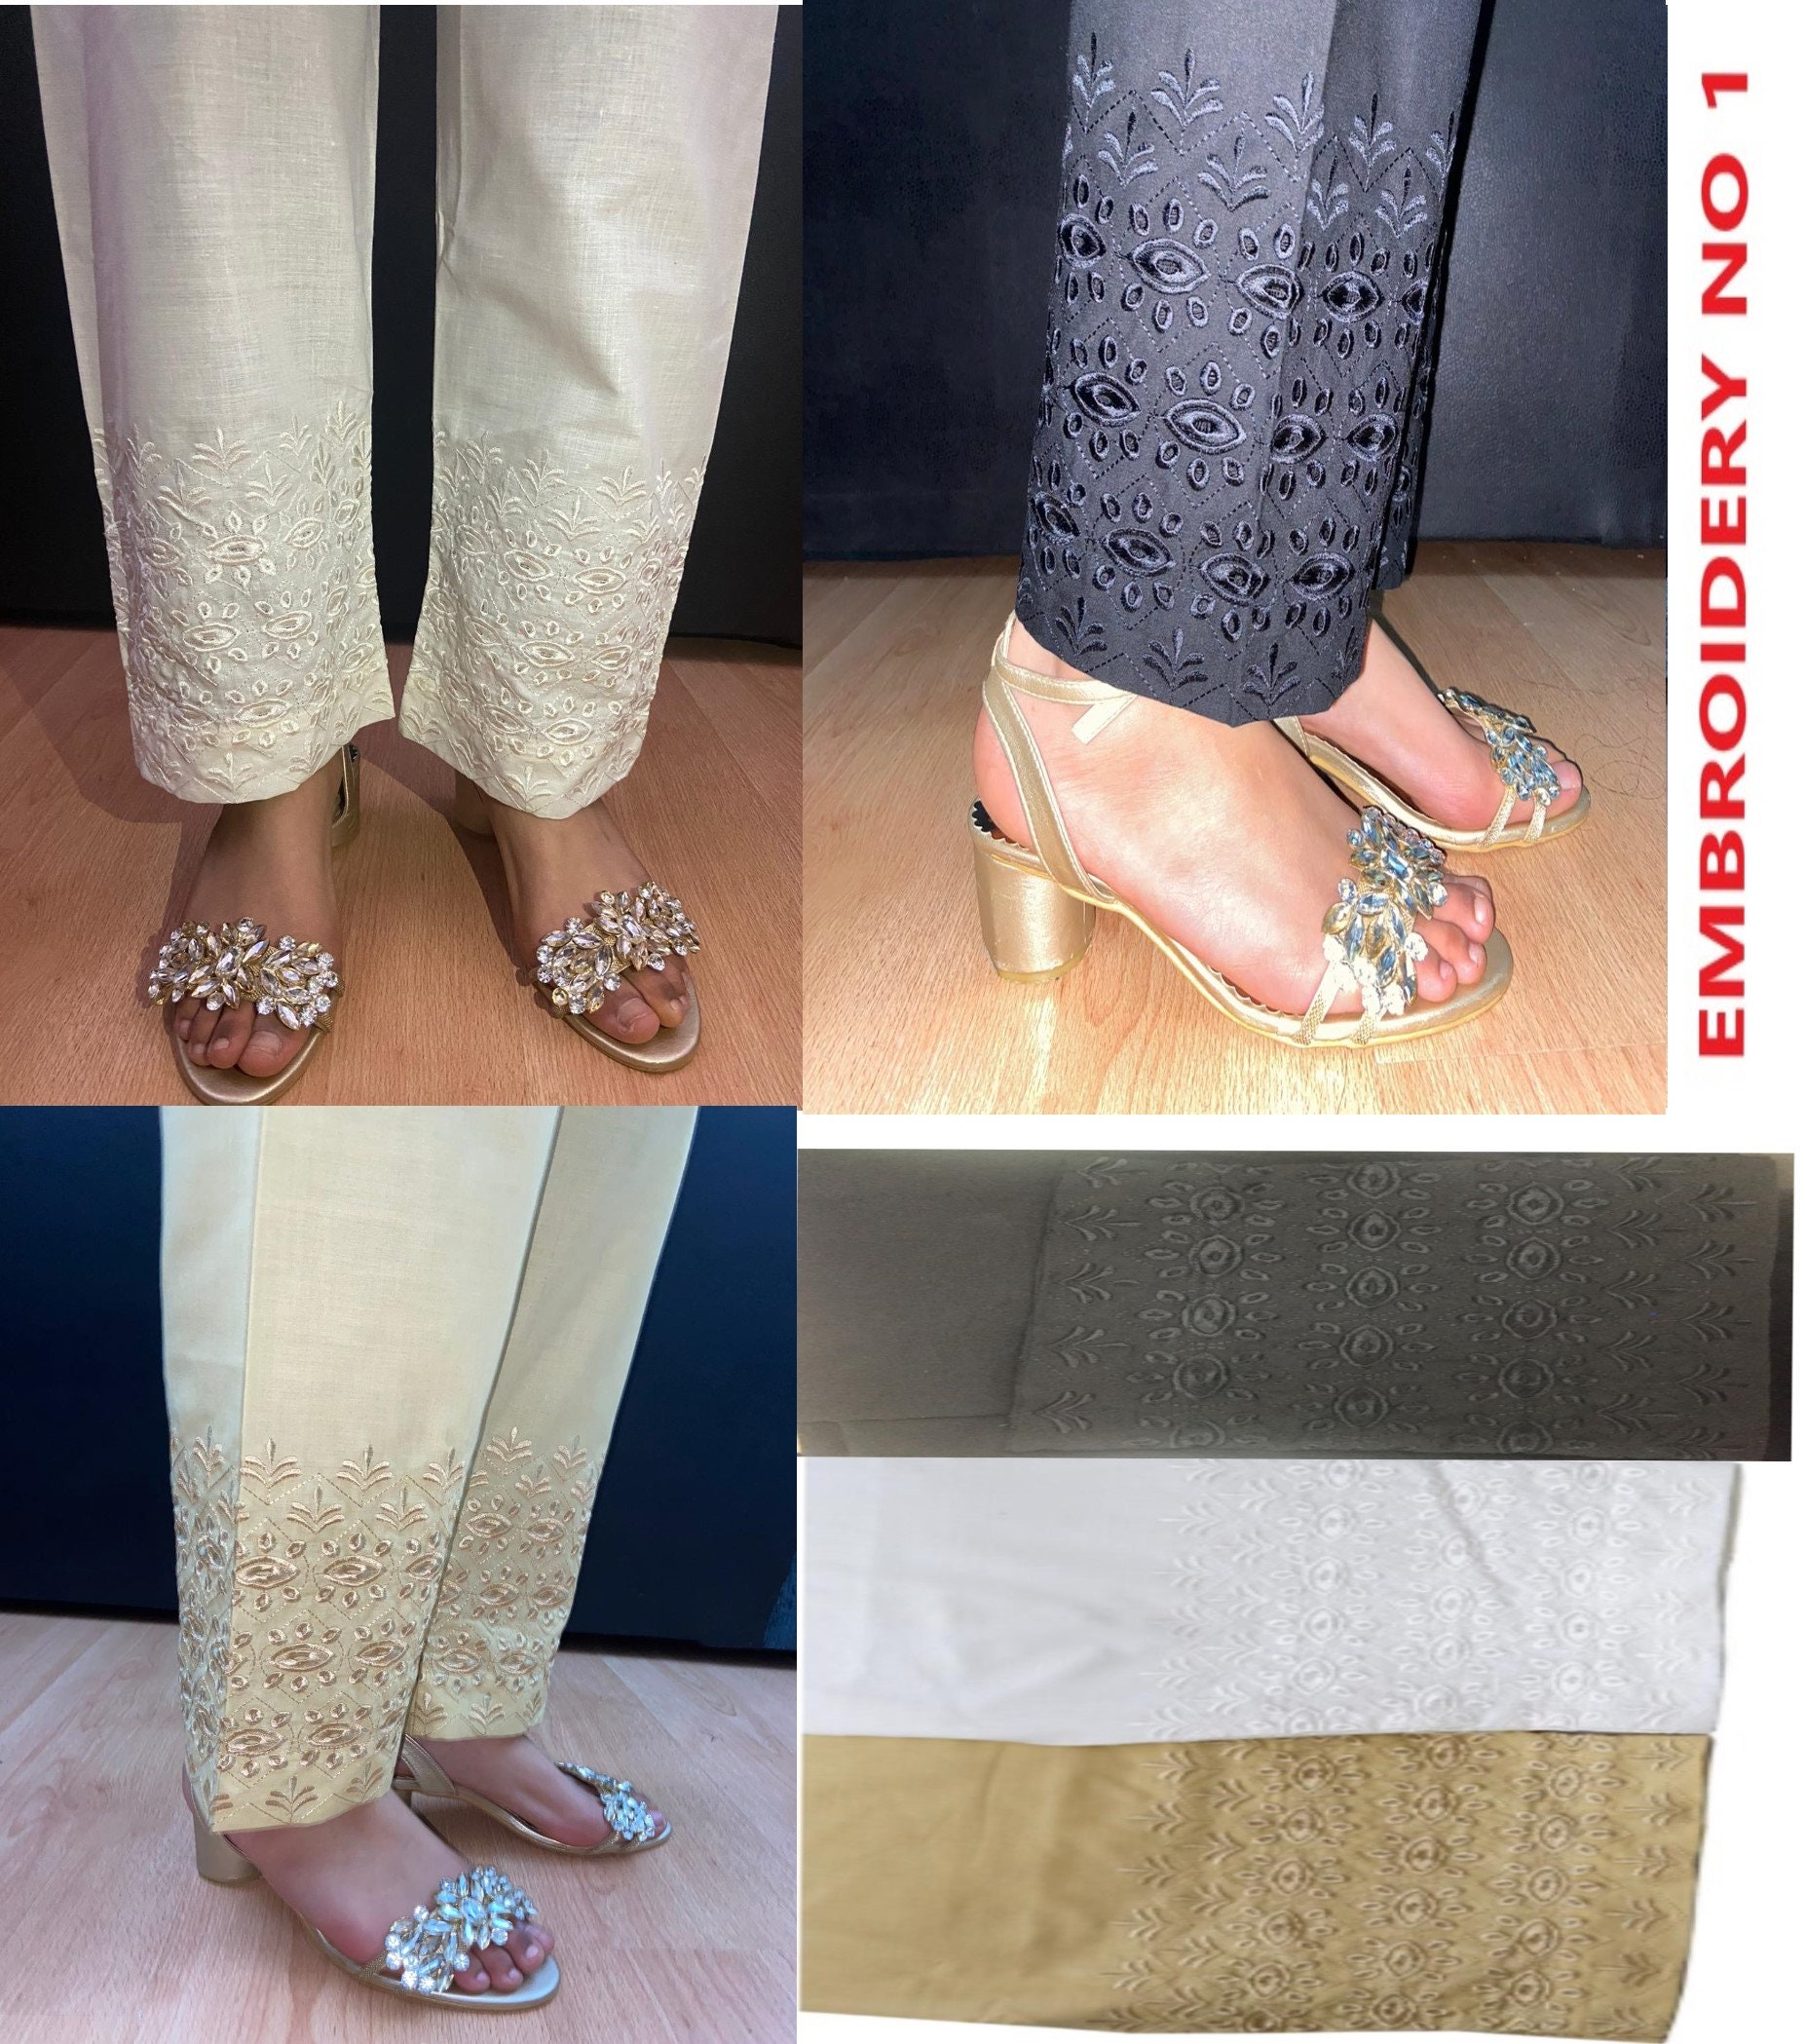 Embroided Trouser Pant - Cotton - Black - ZT469 - Silk Avenue Pakistan